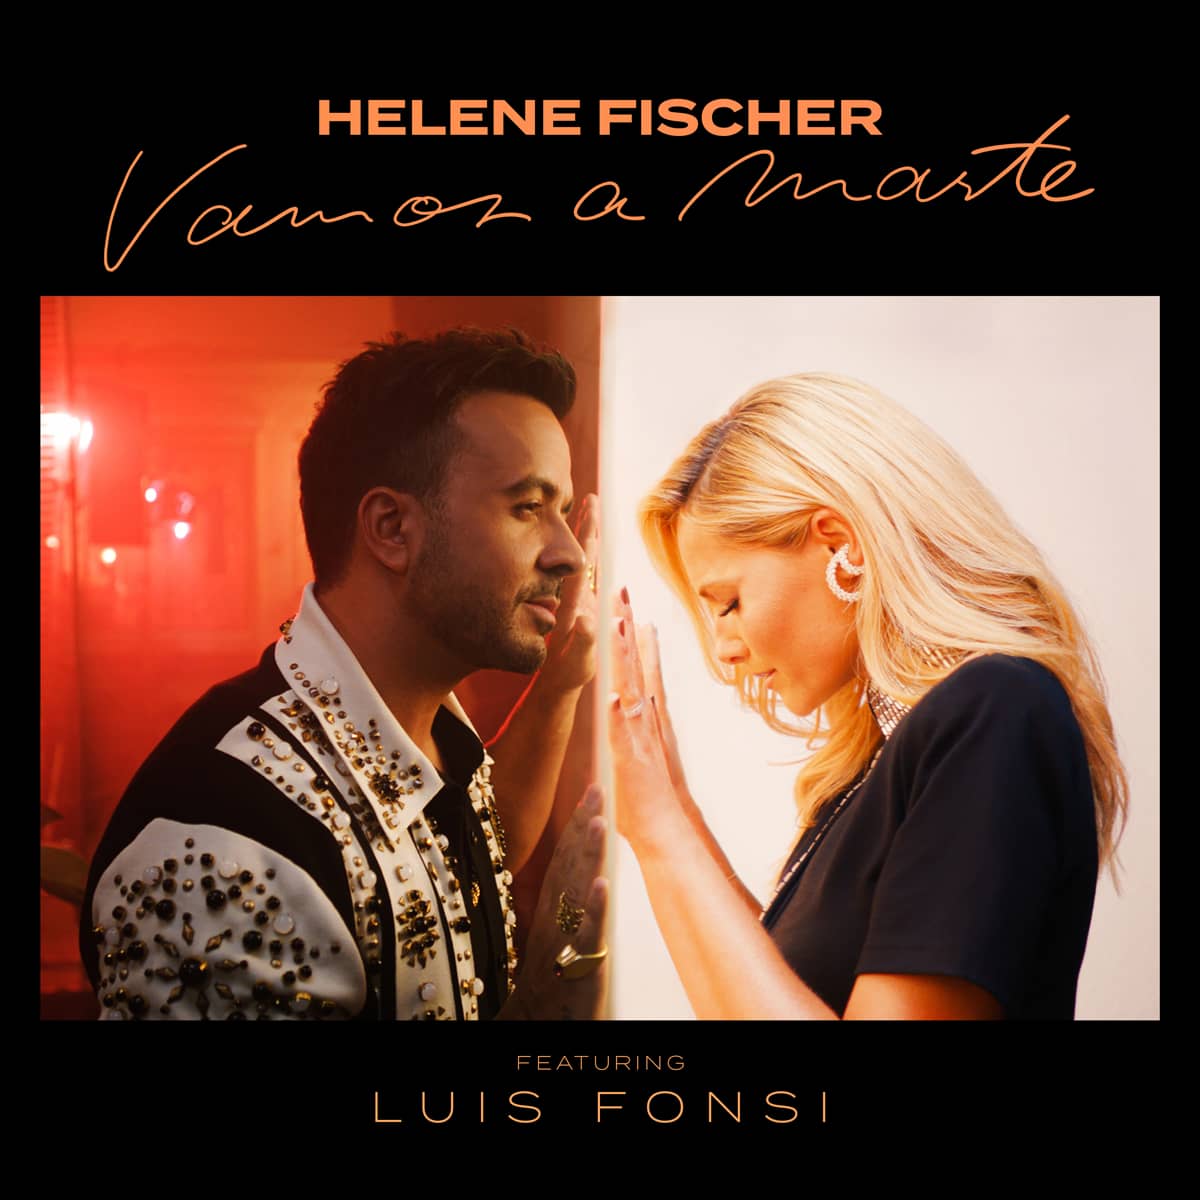 Helene Fischer ft. Luis Fonsi Vamos a Marte auch als Bachata-Version